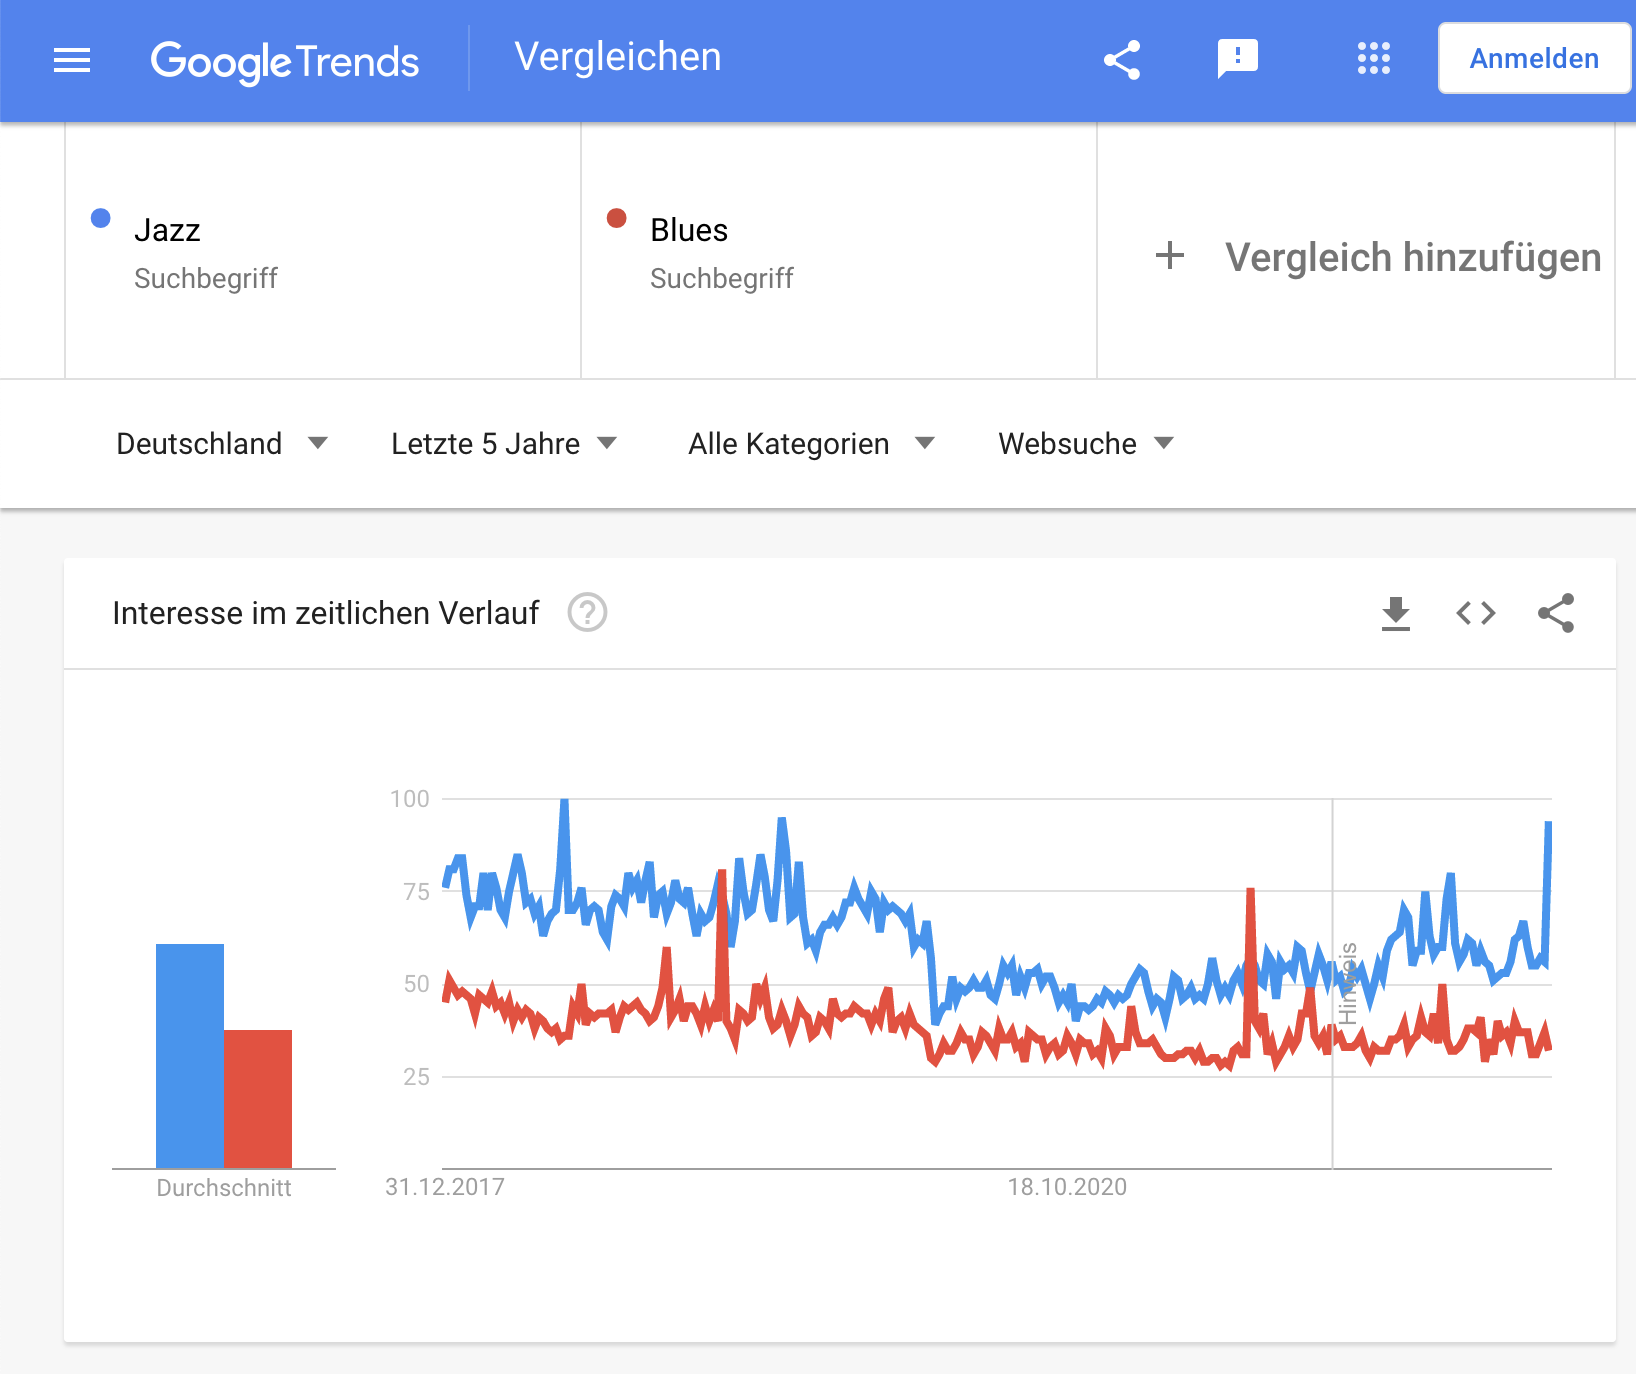 Google Trends Beispiel: Vergleich relative Popularität Jazz & Blues 